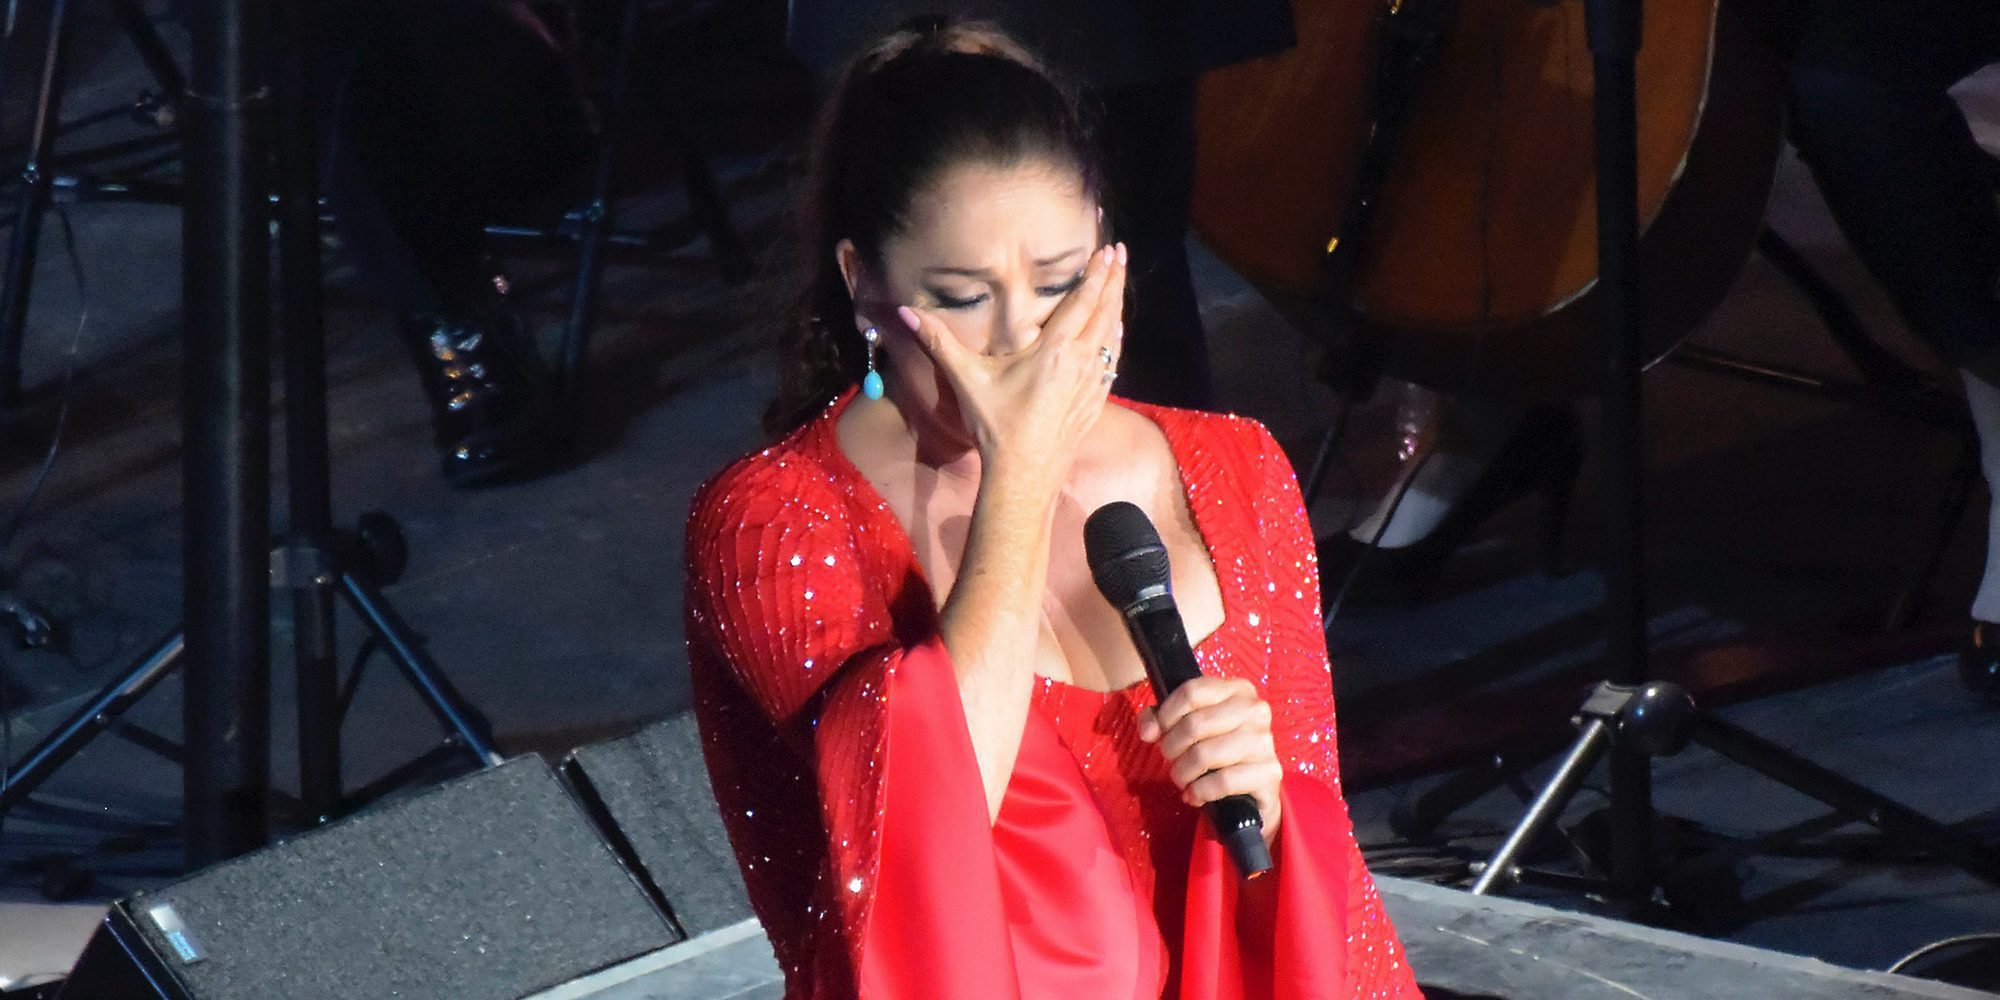 La emotiva dedicatoria de Isabel Pantoja a su fan fallecida en su concierto de Gran Canaria: "Busca a los míos"